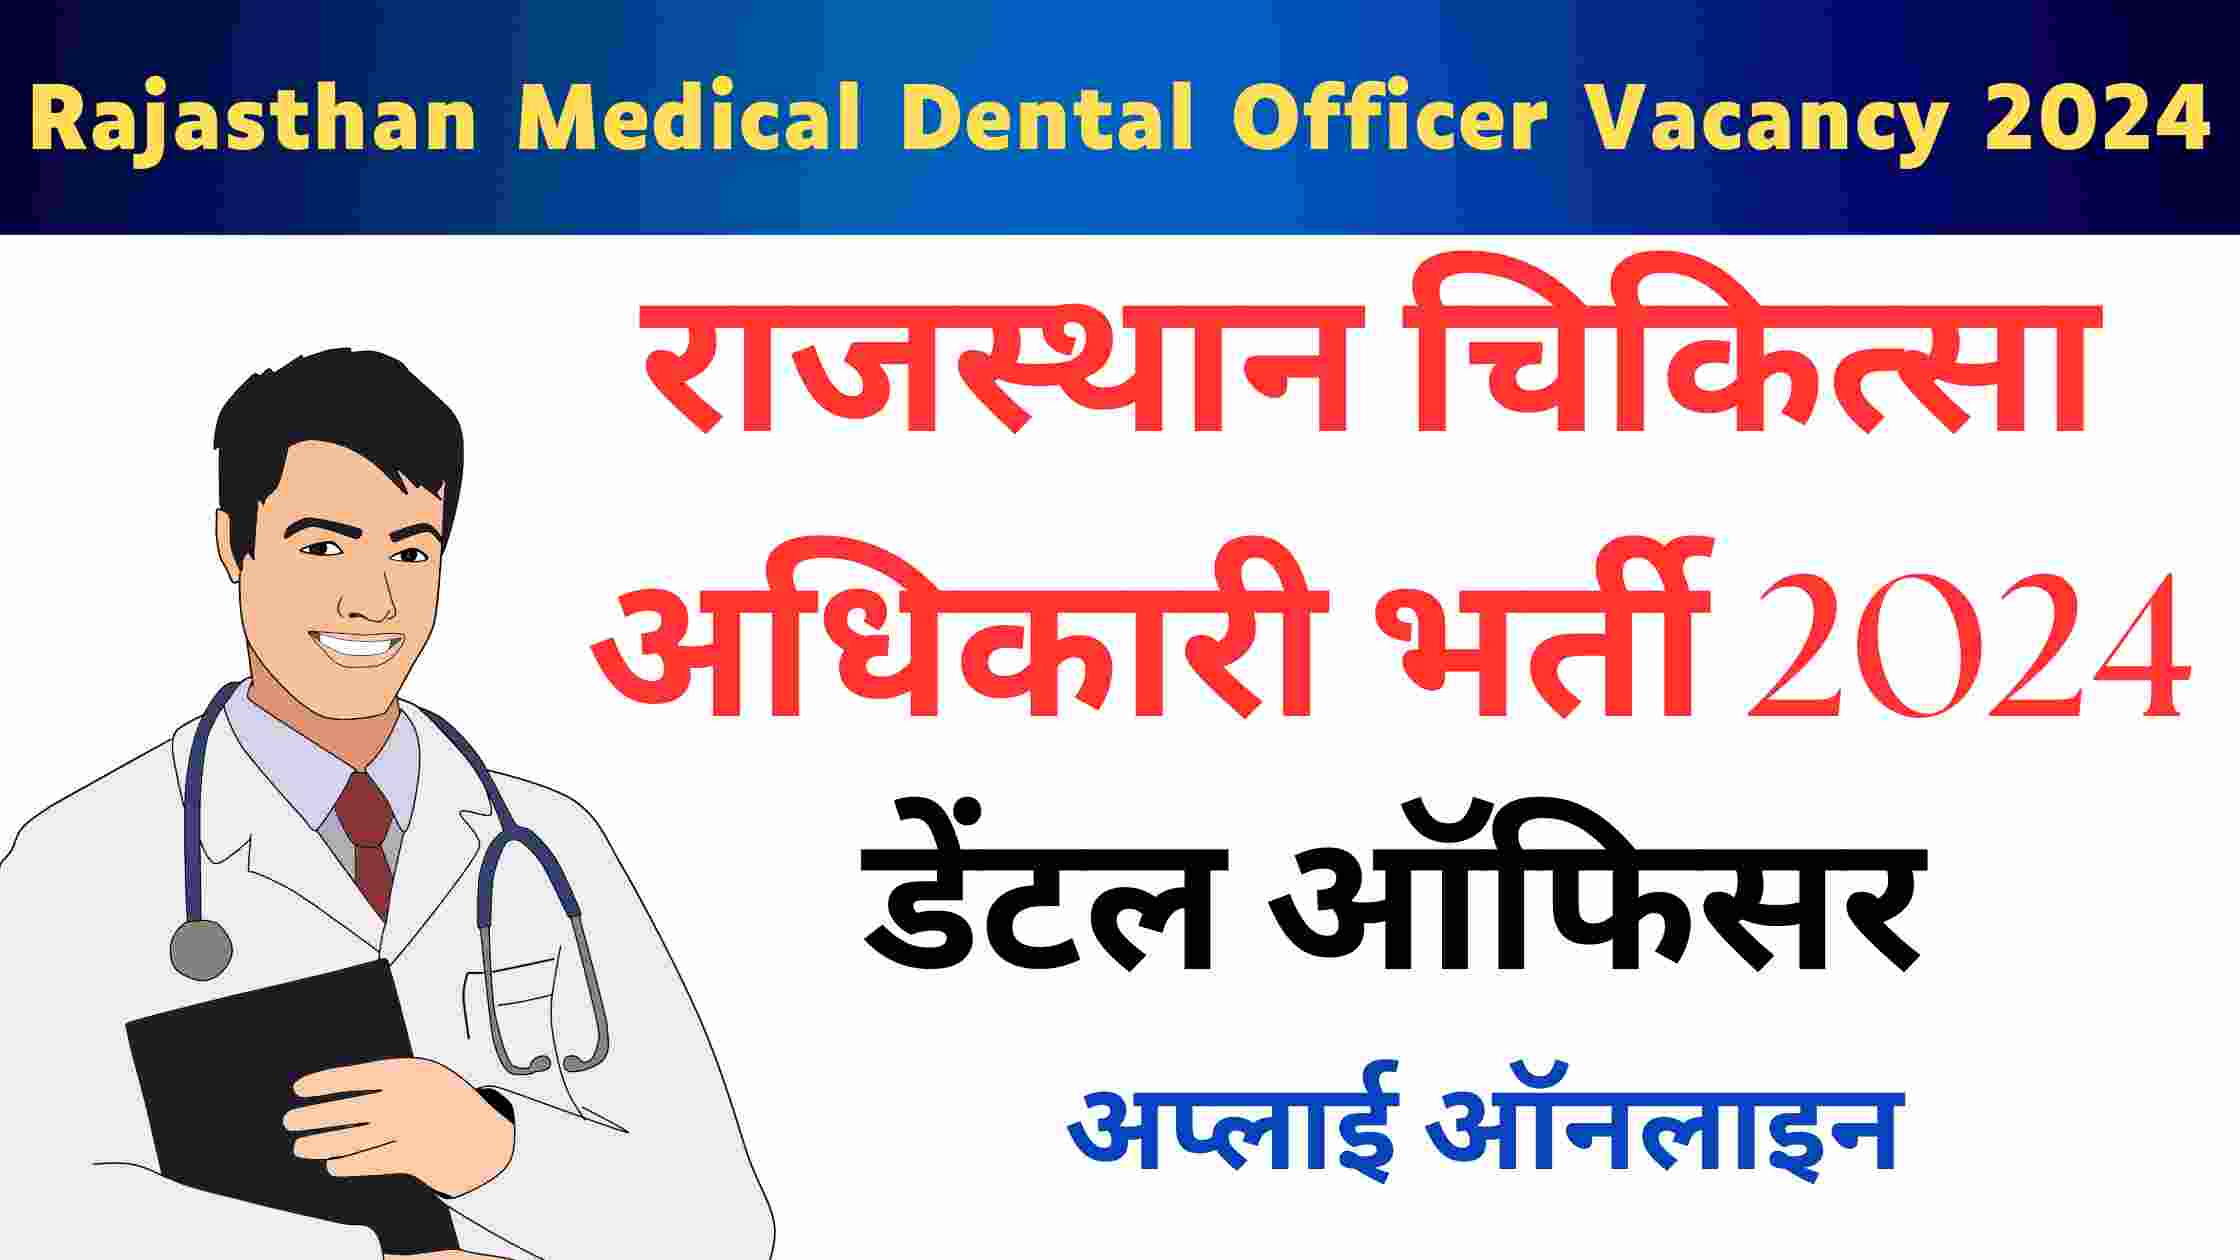 Rajasthan Medical Dental Officer Vacancy 2024 | राजस्थान चिकित्सा अधिकारी (डेंटल) भर्ती का नोटिफिकेशन जारी जाने आवेदन संबंधित जानकारी